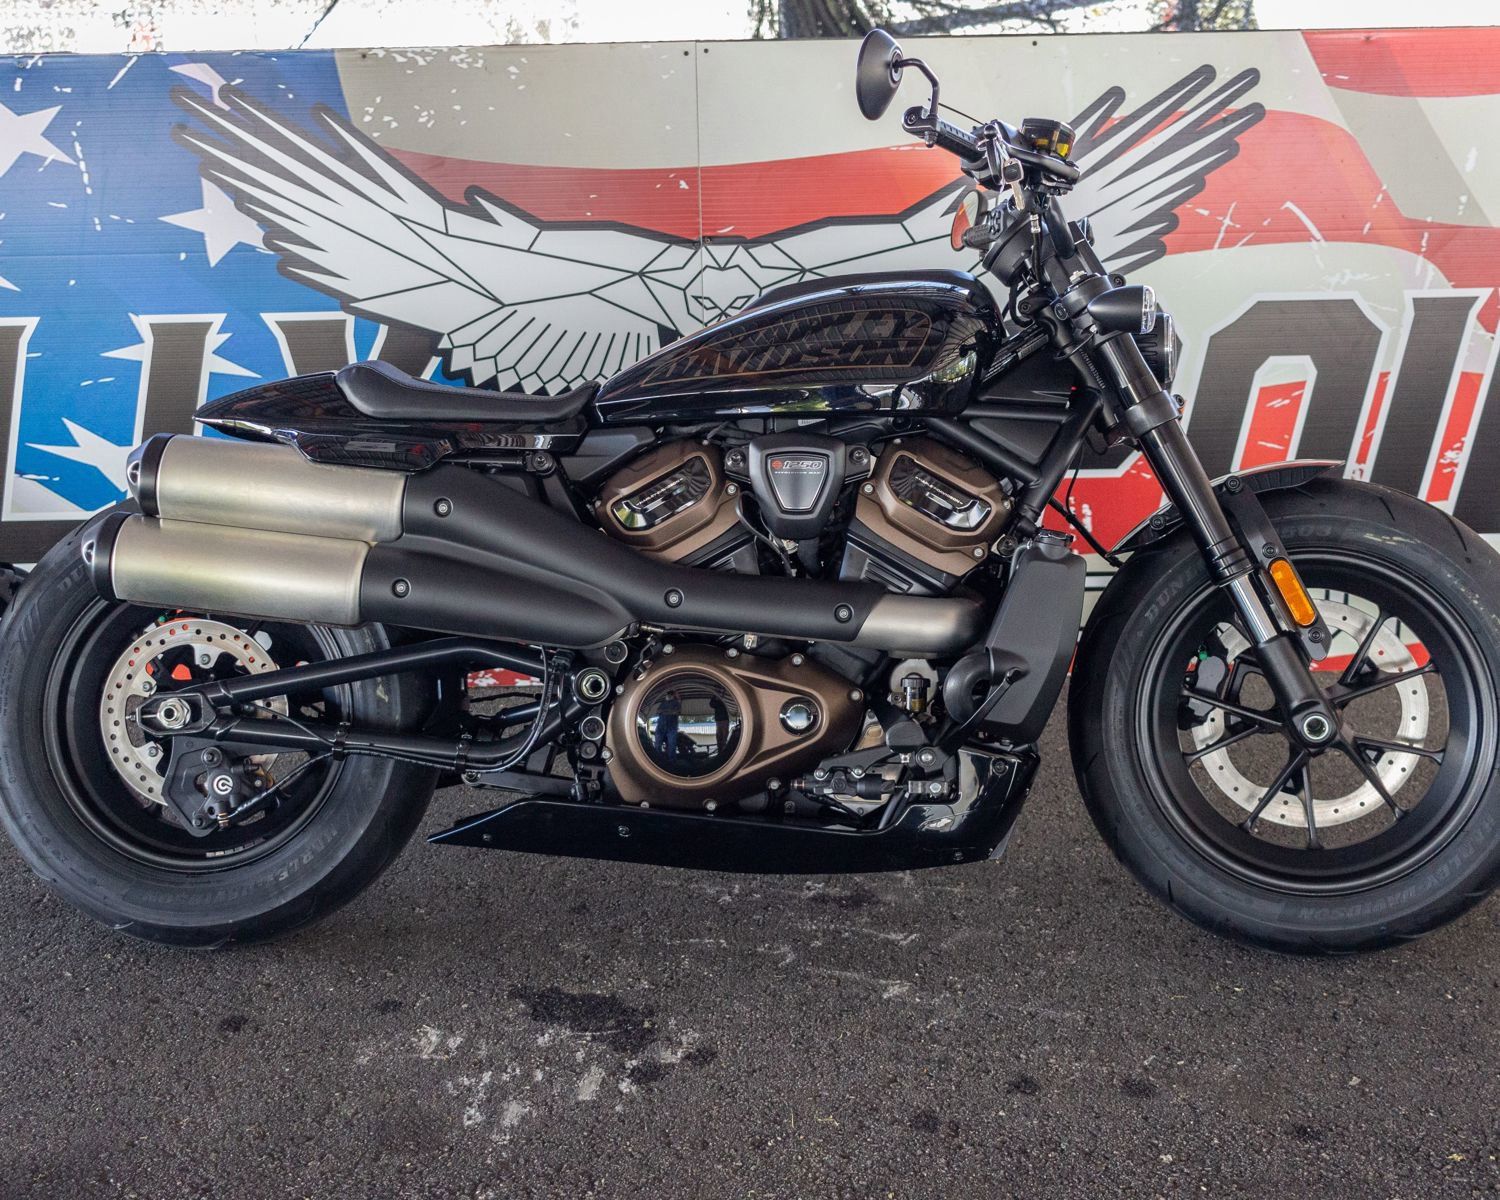 2022 Harley-Davidson Sportster® S in Columbus, Georgia - Photo 1